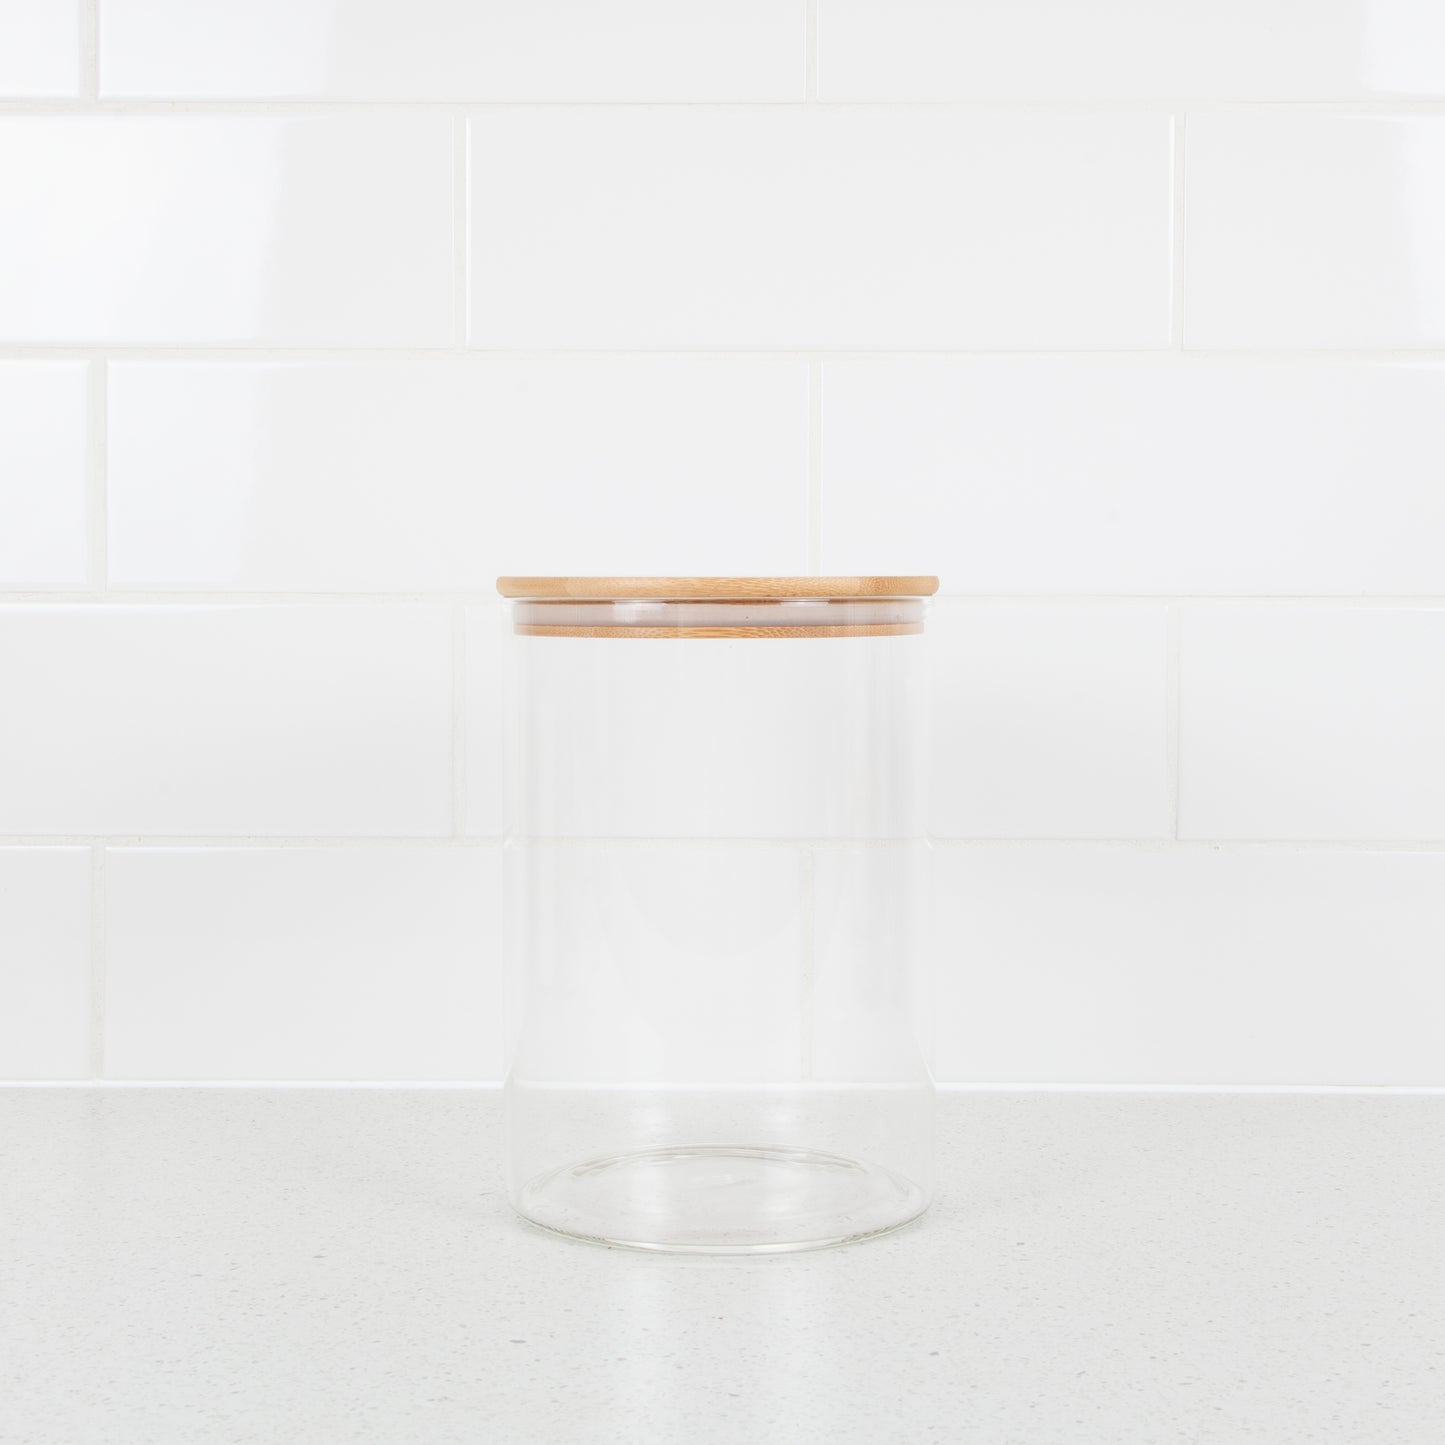 Bamboo Glass Jar 950ml